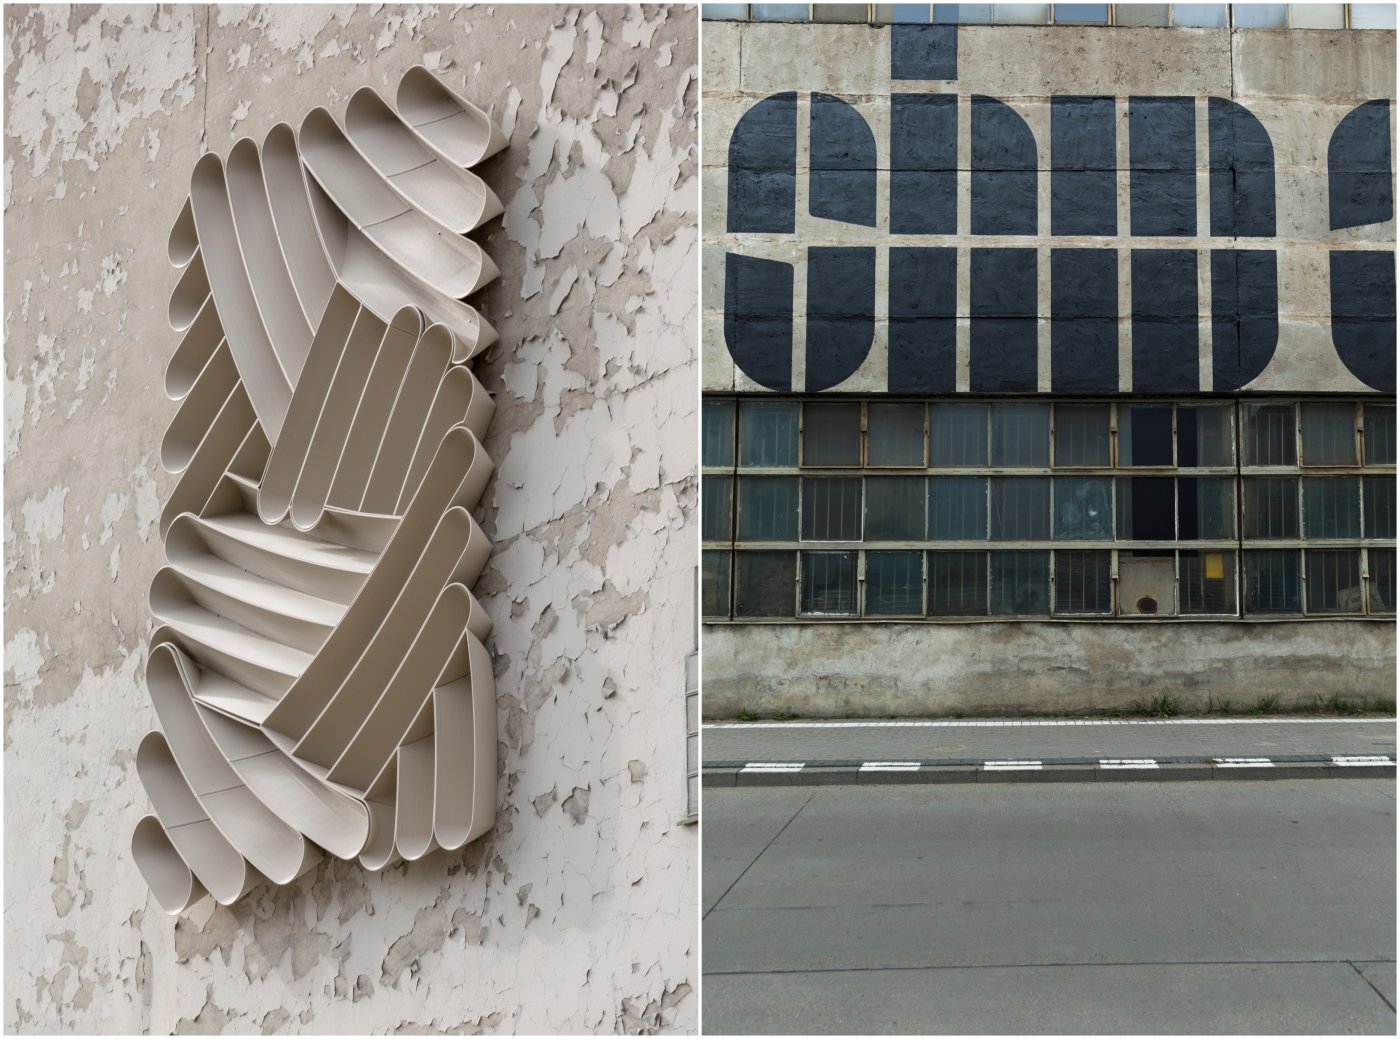 Relief autorstwa The New Raw z przetworzonego plastiku (po lewej) oraz mural studia Thonik nawiązujący do popularnej piosenki (z prawej) - to dwie pierwsze realizacje w ramach Biennale Dizajnu i Sztuki Miejskiej 2022, fot. Rafał Kołsut / Traffic Design